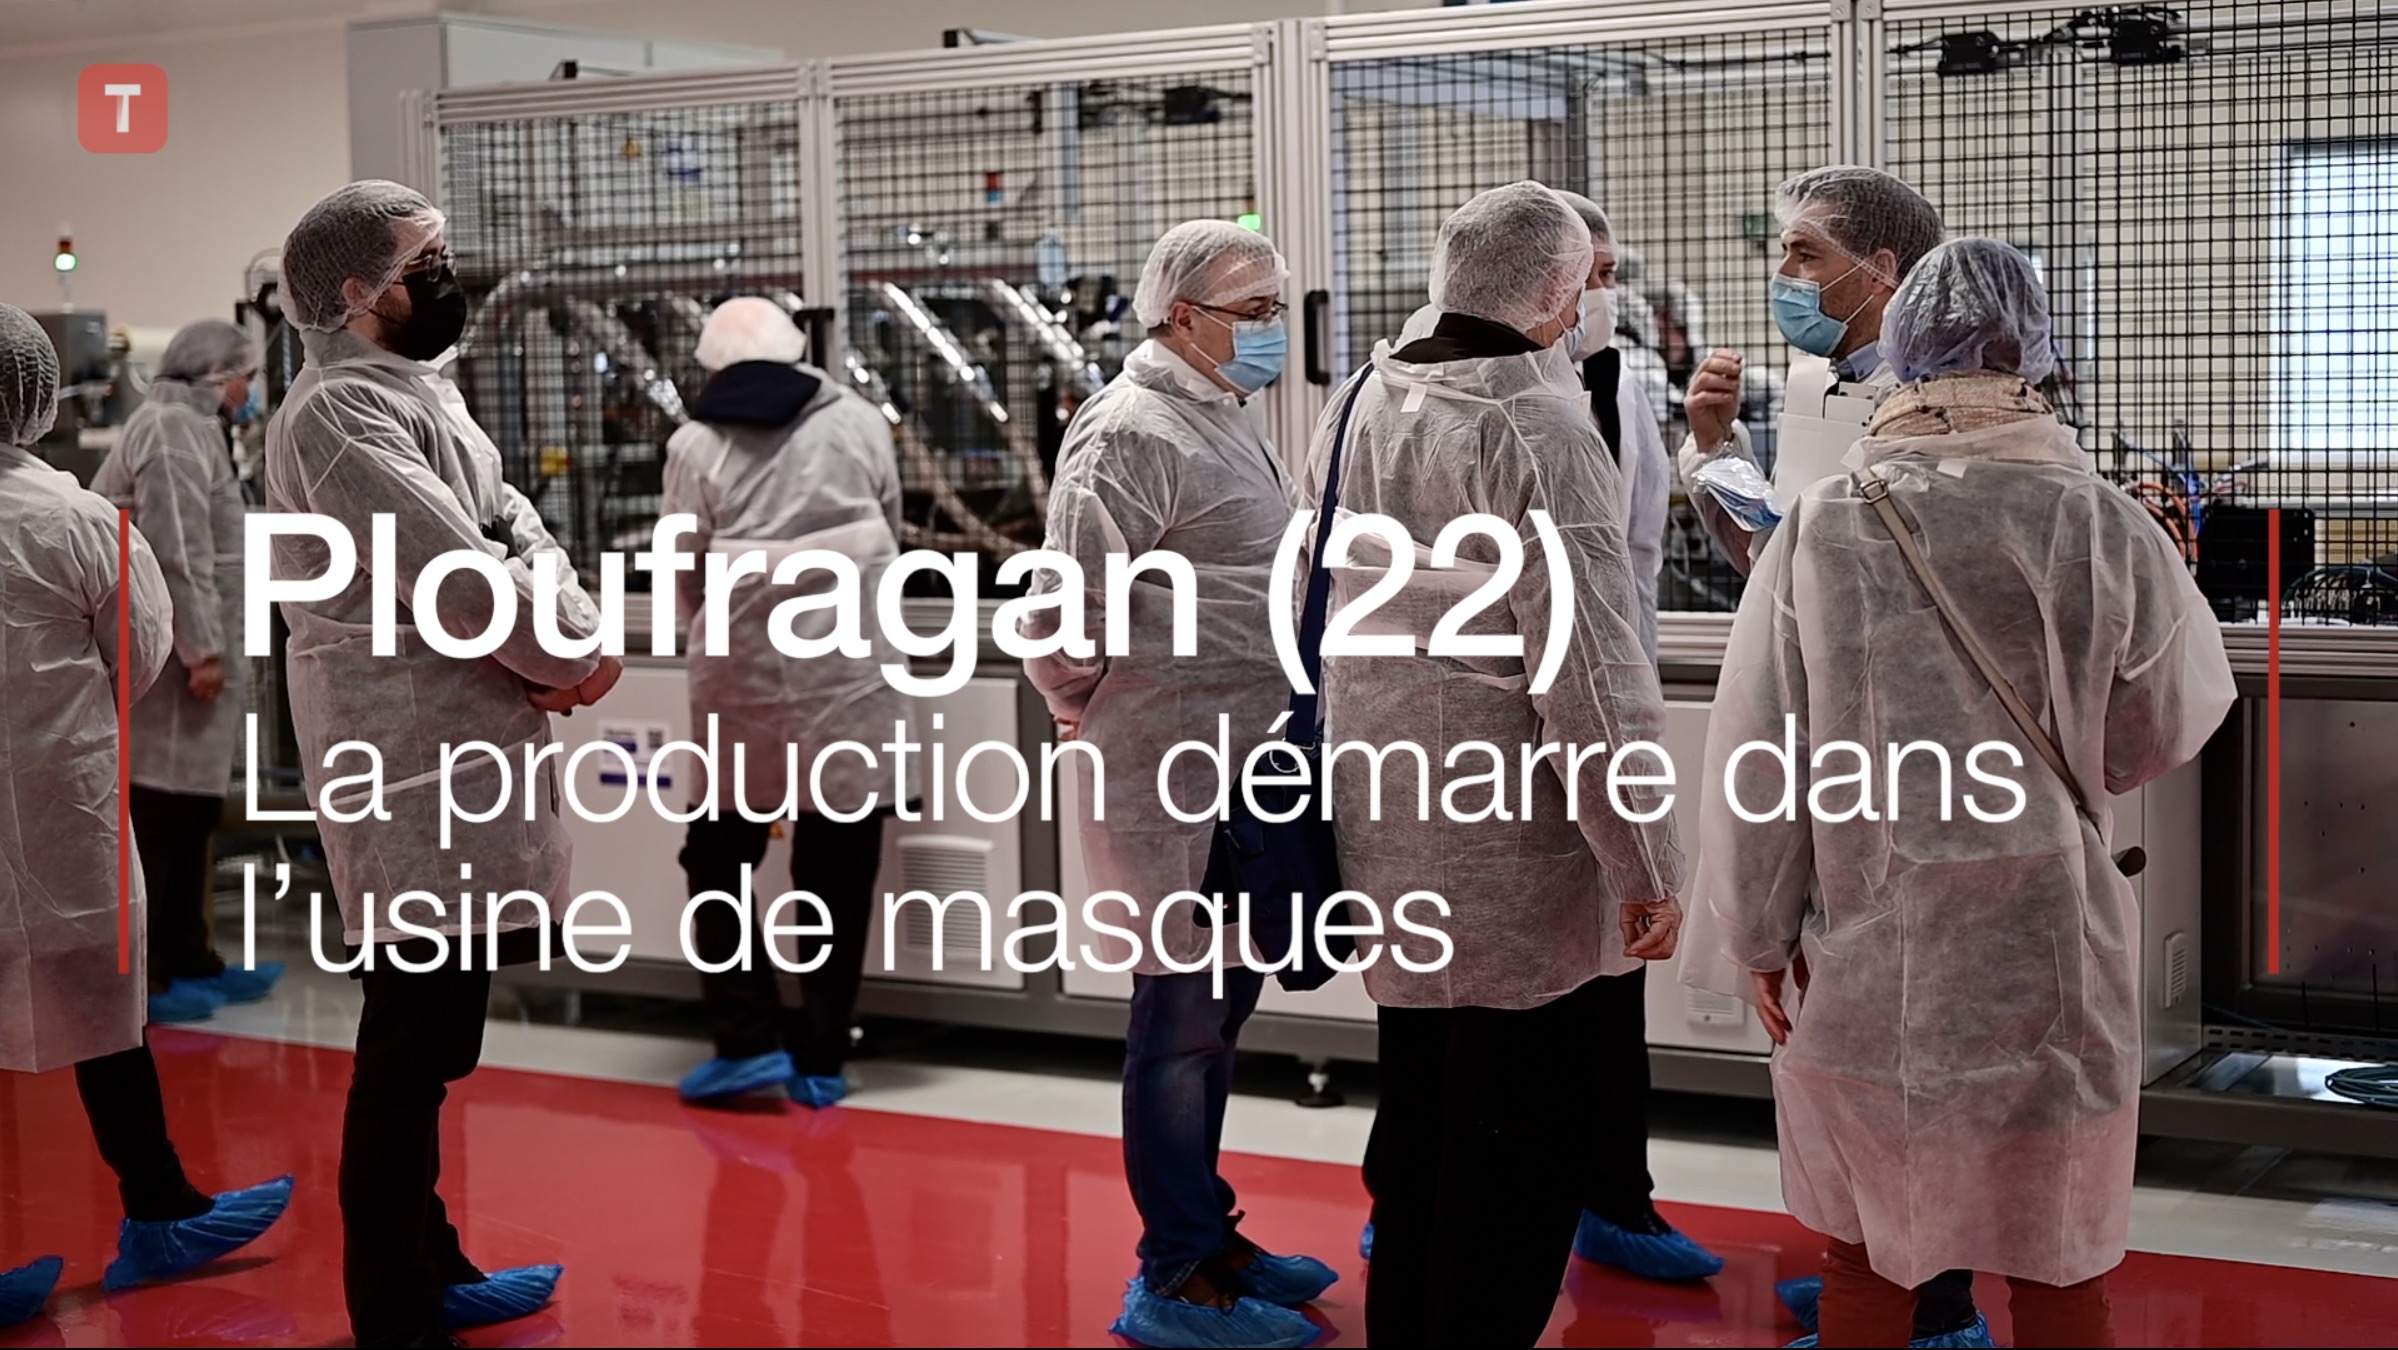 Ploufragan (22). La production démarre dans l’usine de masques (Le Télégramme)